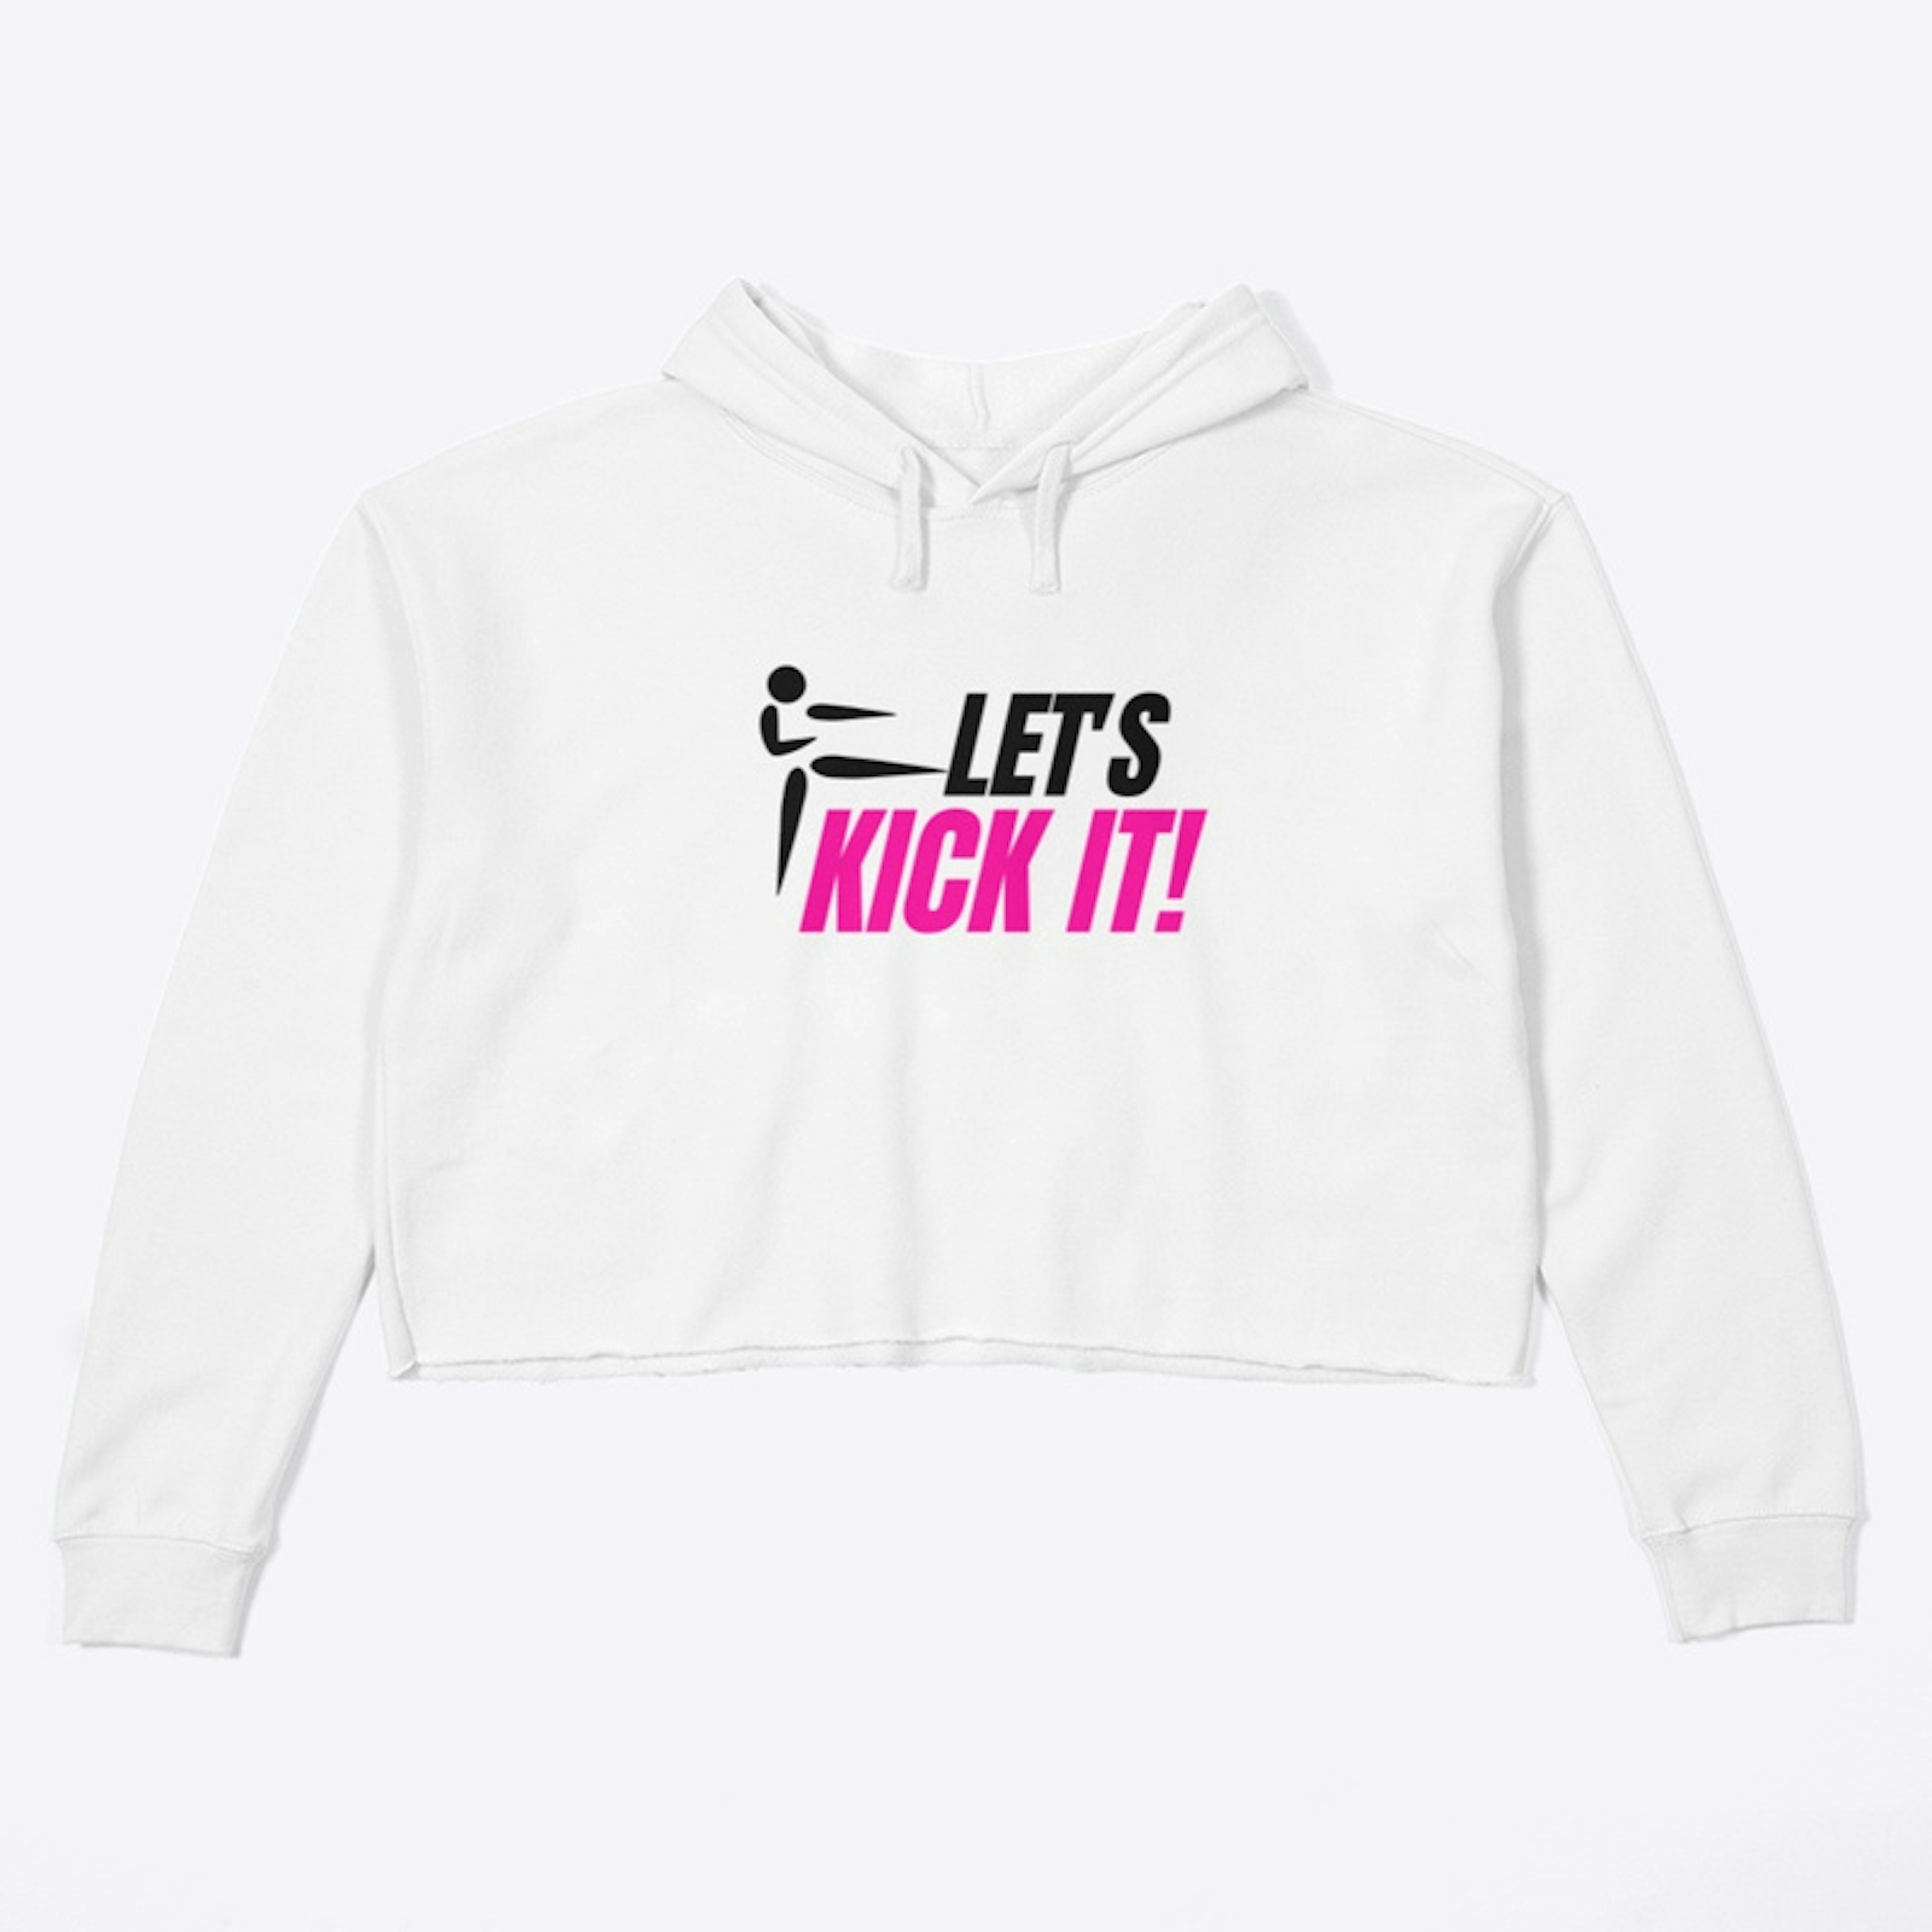 Let's Kick It!